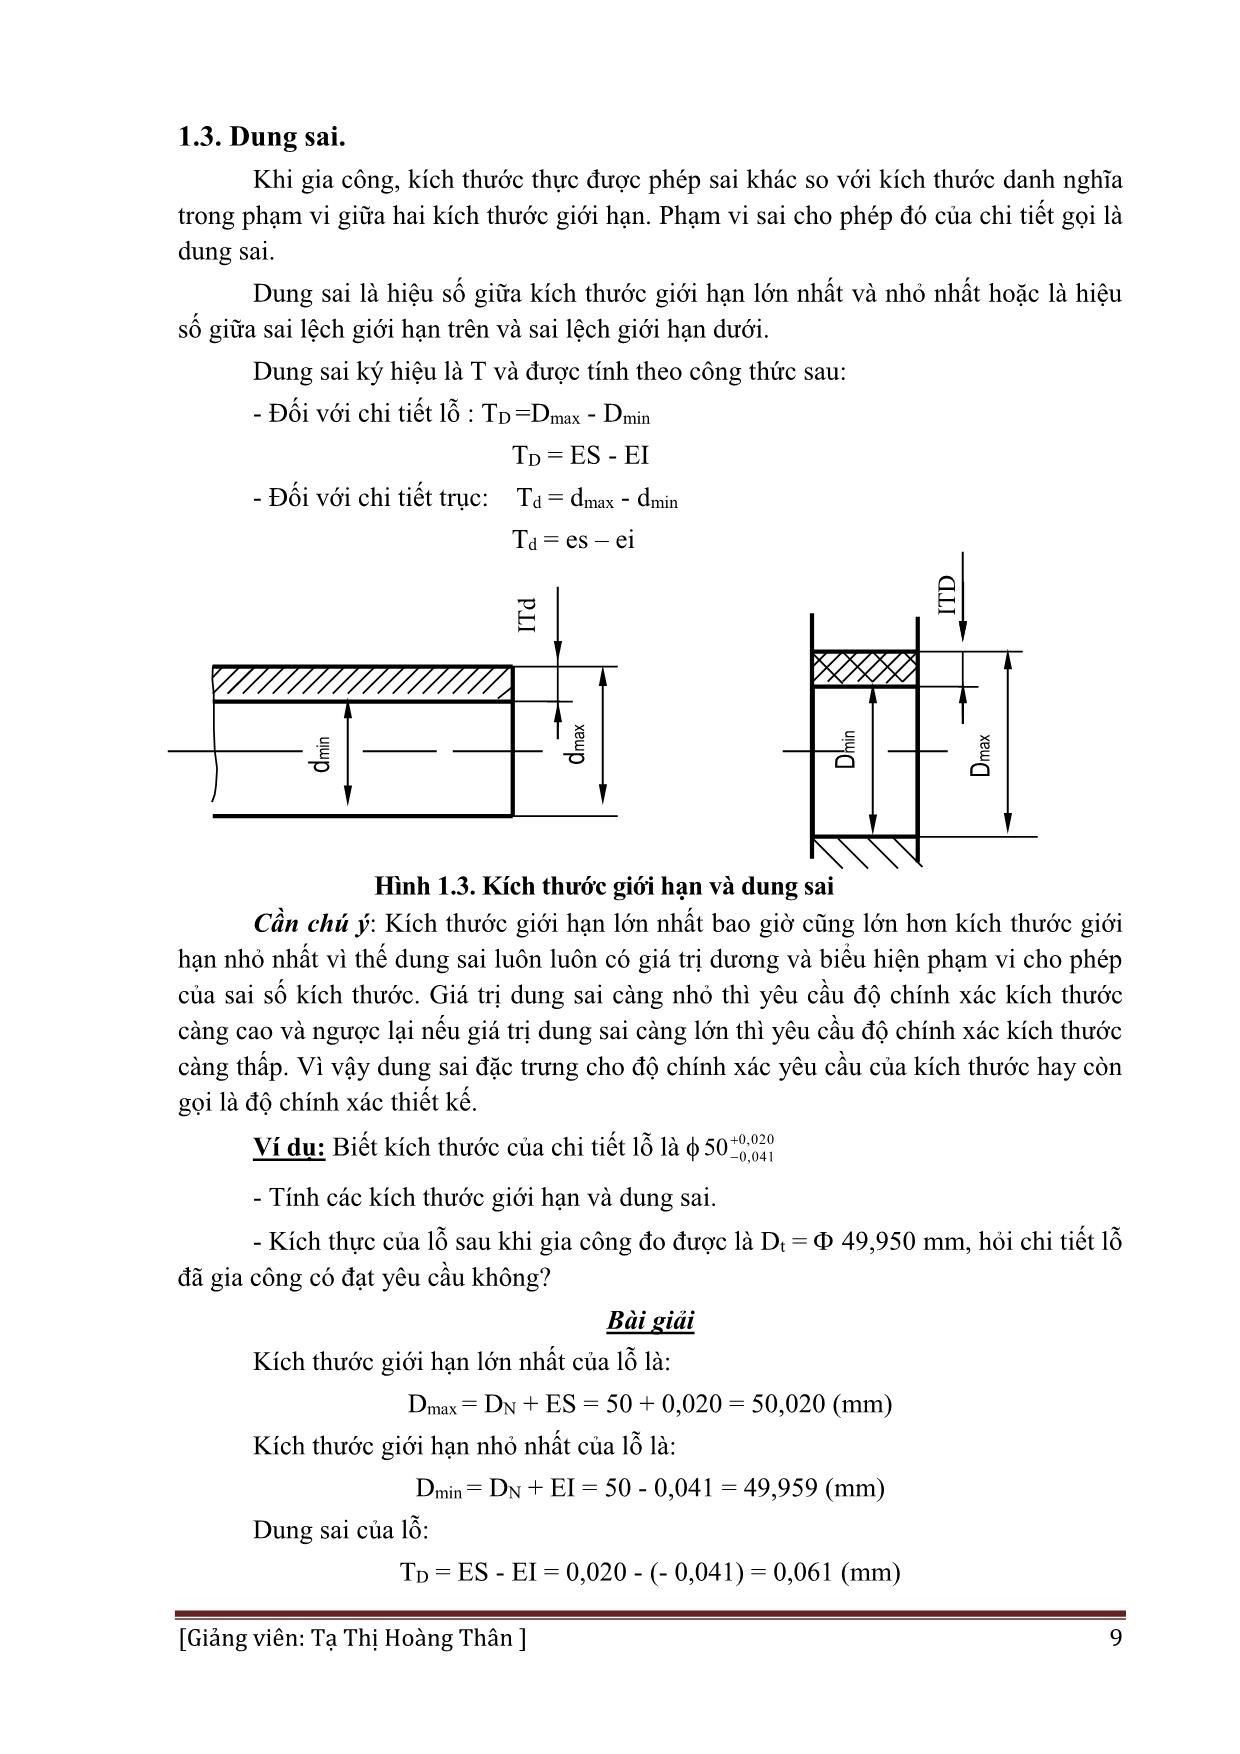 Giáo trình Dung sai lắp ghép và đo lường kỹ thuật - Nghề: Hàn trang 9